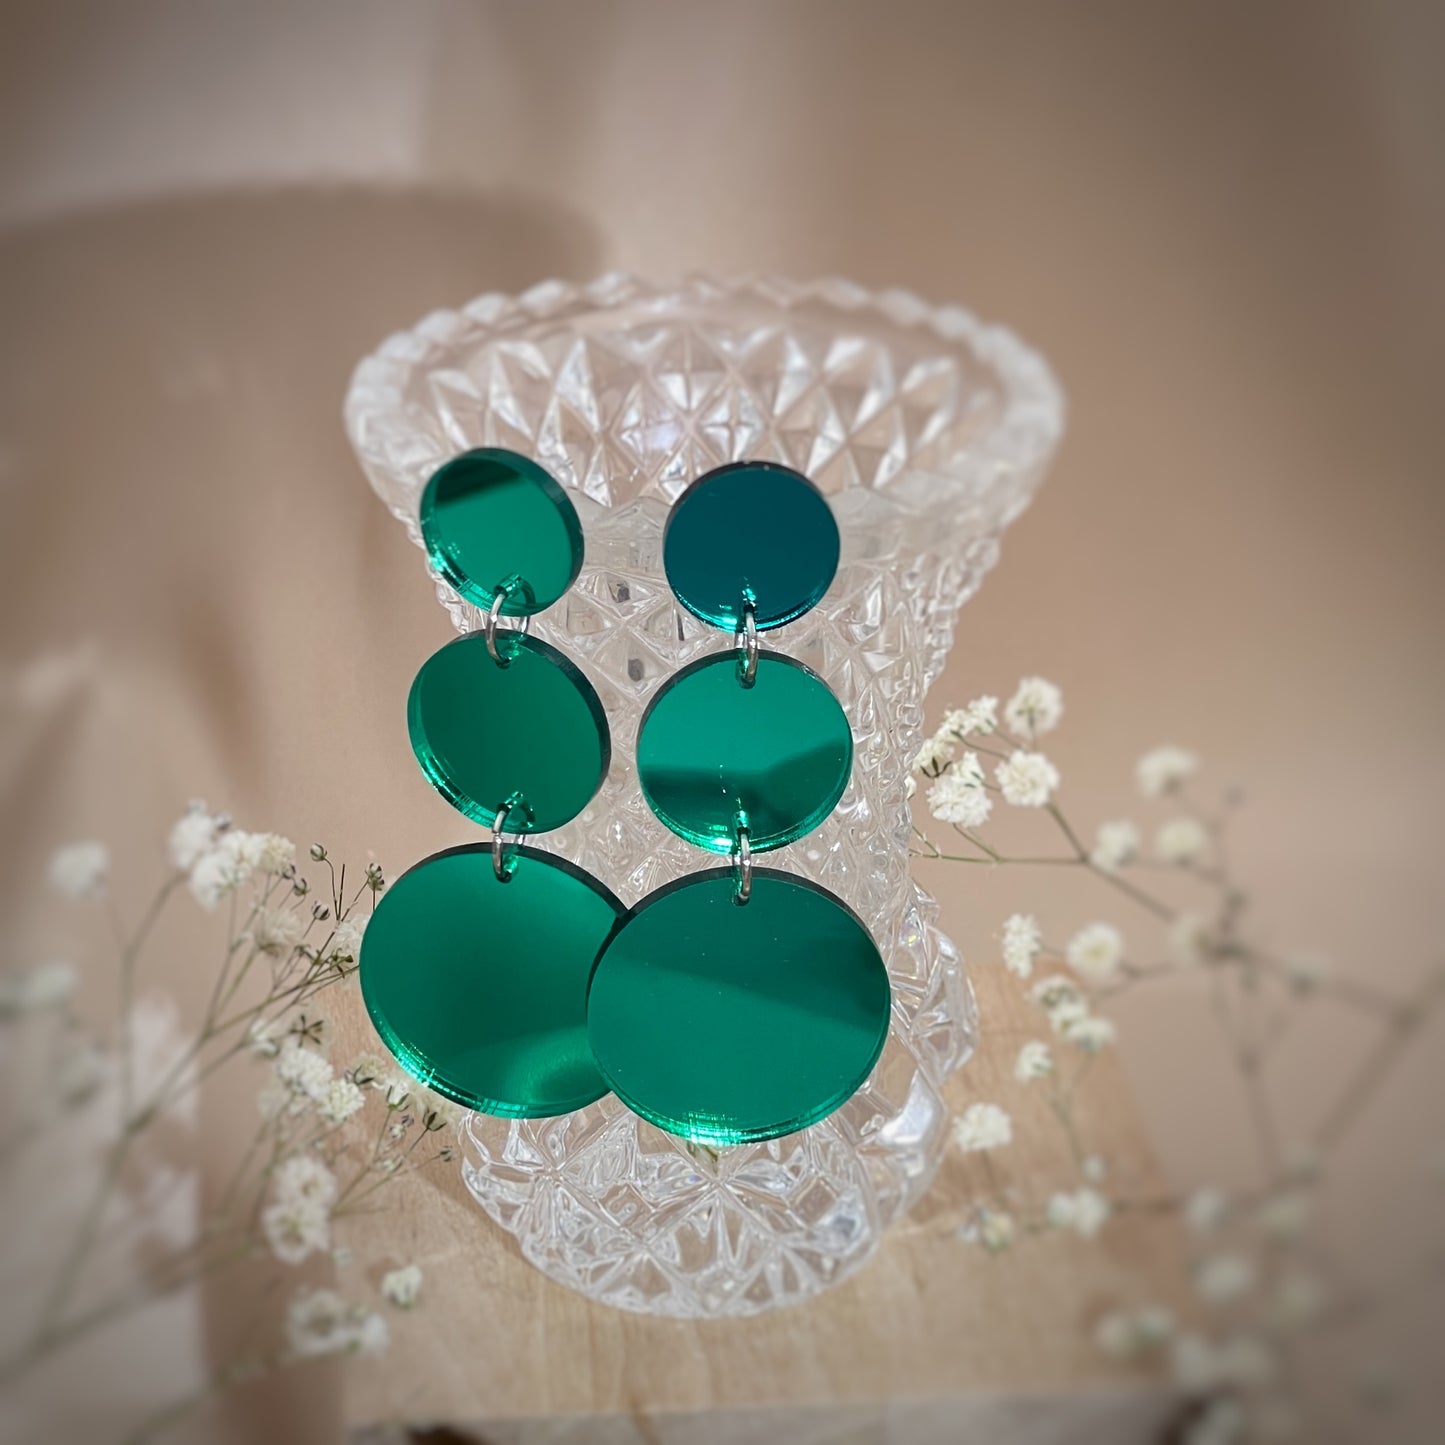 Kauniisti valoa heijastavat peilikorvakorut ovat laadukasta suomalaista käsityötä, ja ne ovat kevyet pitää korvassa. Värivaihtoehtoja löytyy useita, joten jokaista asukokonaisuutta ja tilaisuutta täydentävä korupari löytyy varmasti. Tämä koru on vihreä.